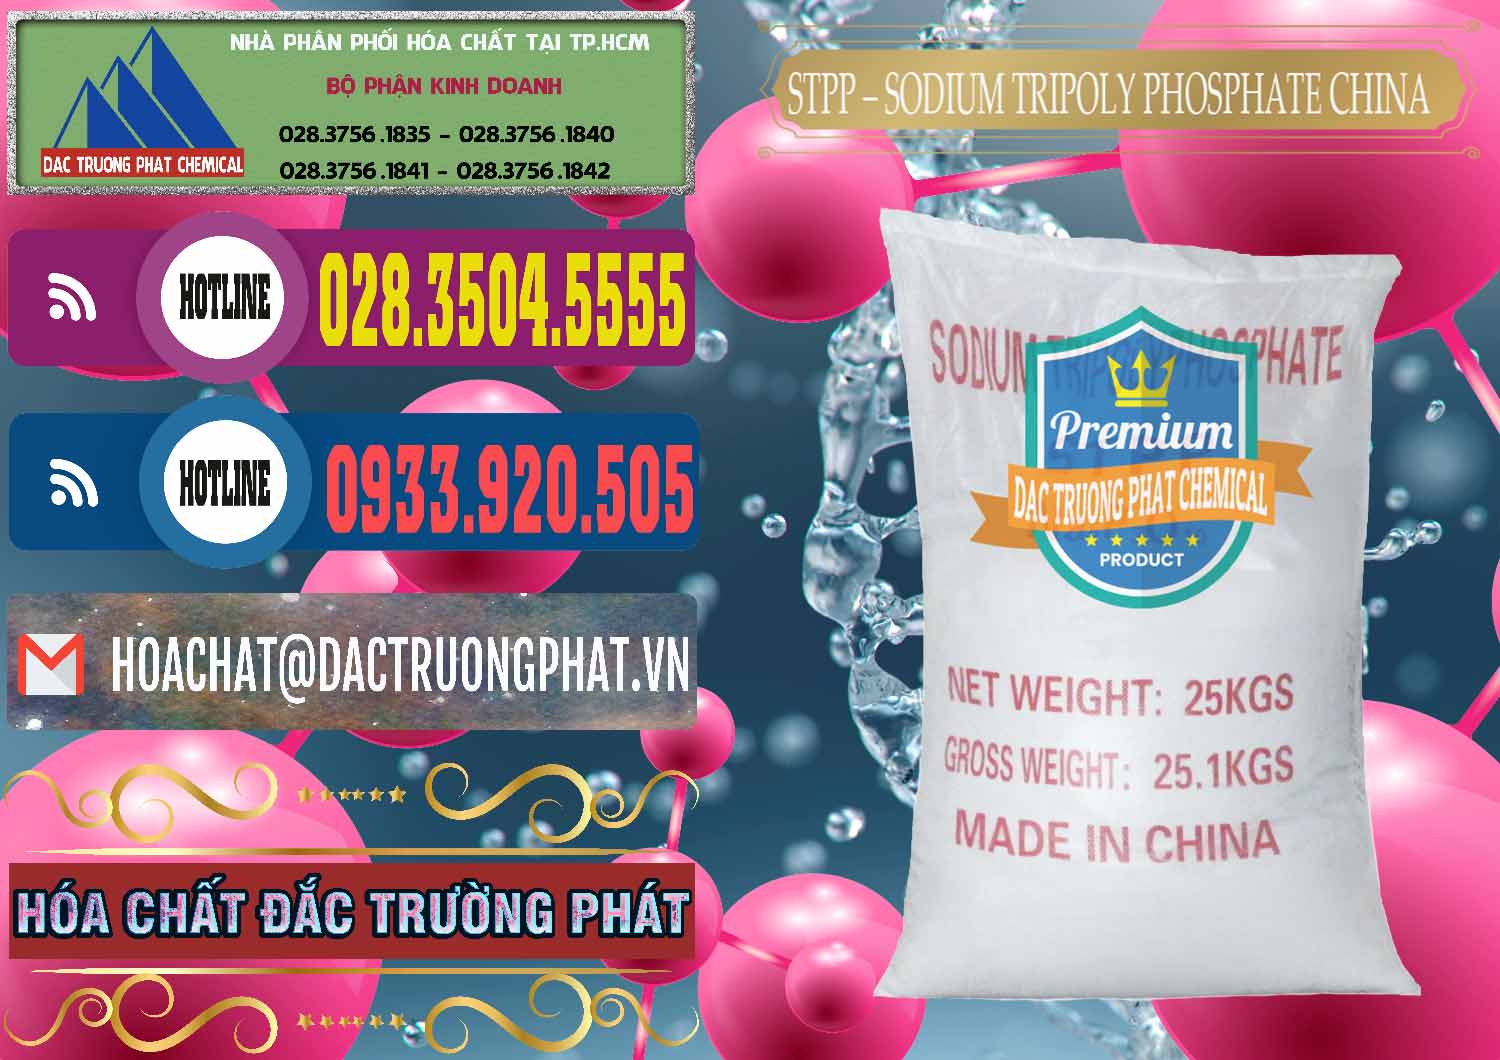 Đơn vị bán _ phân phối Sodium Tripoly Phosphate - STPP 96% Chữ Đỏ Trung Quốc China - 0155 - Công ty kinh doanh ( phân phối ) hóa chất tại TP.HCM - muabanhoachat.com.vn